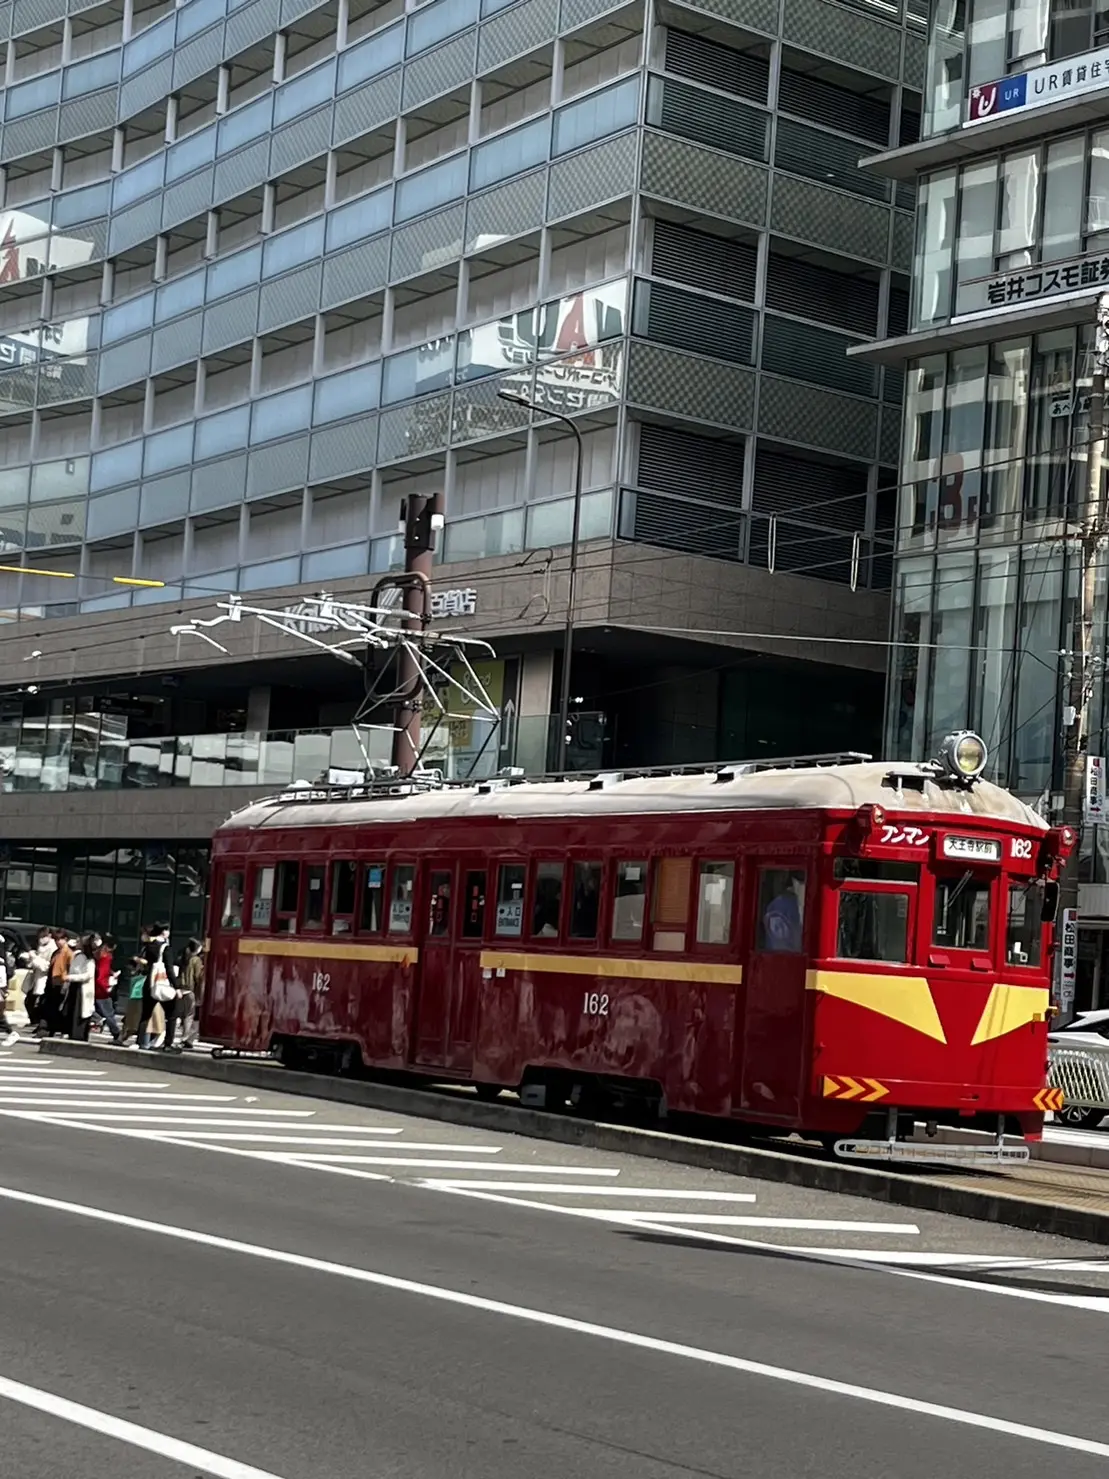 天王寺から堺市内を結ぶ阪堺電車。通称チン電。明治４４年以来約１１０年間、町の風物詞となっています。
